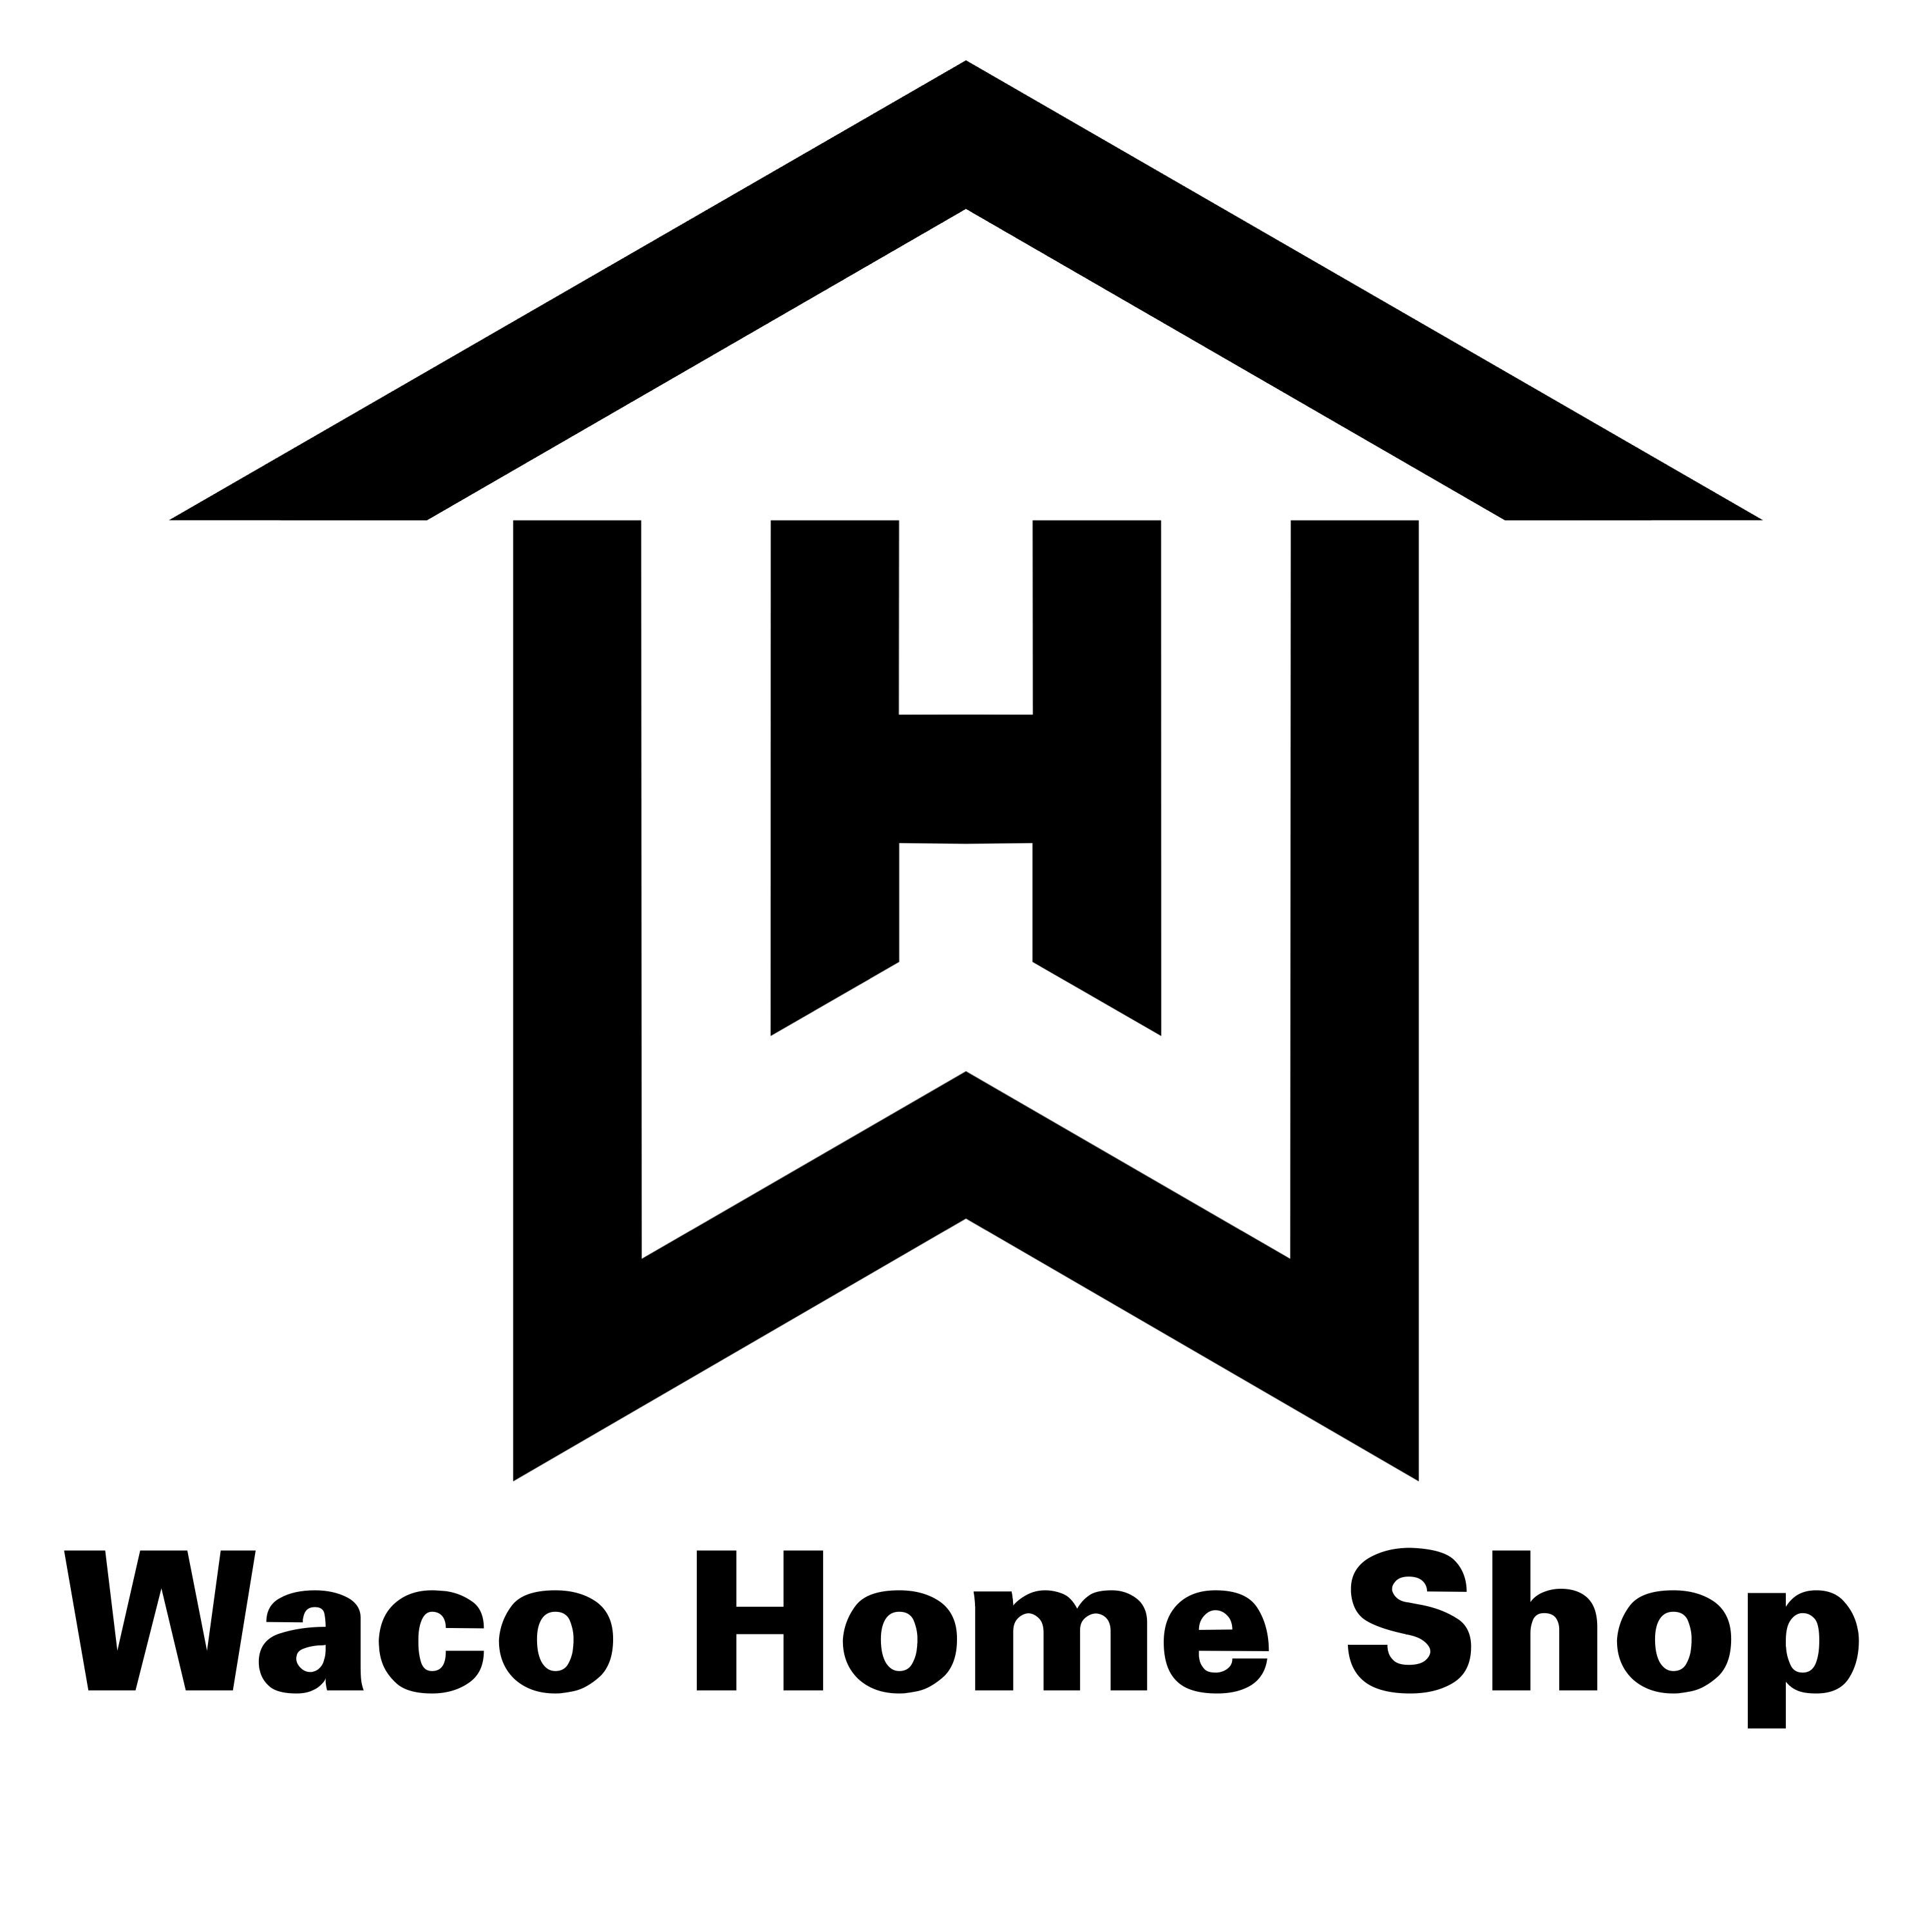 Waco Home Shop logo